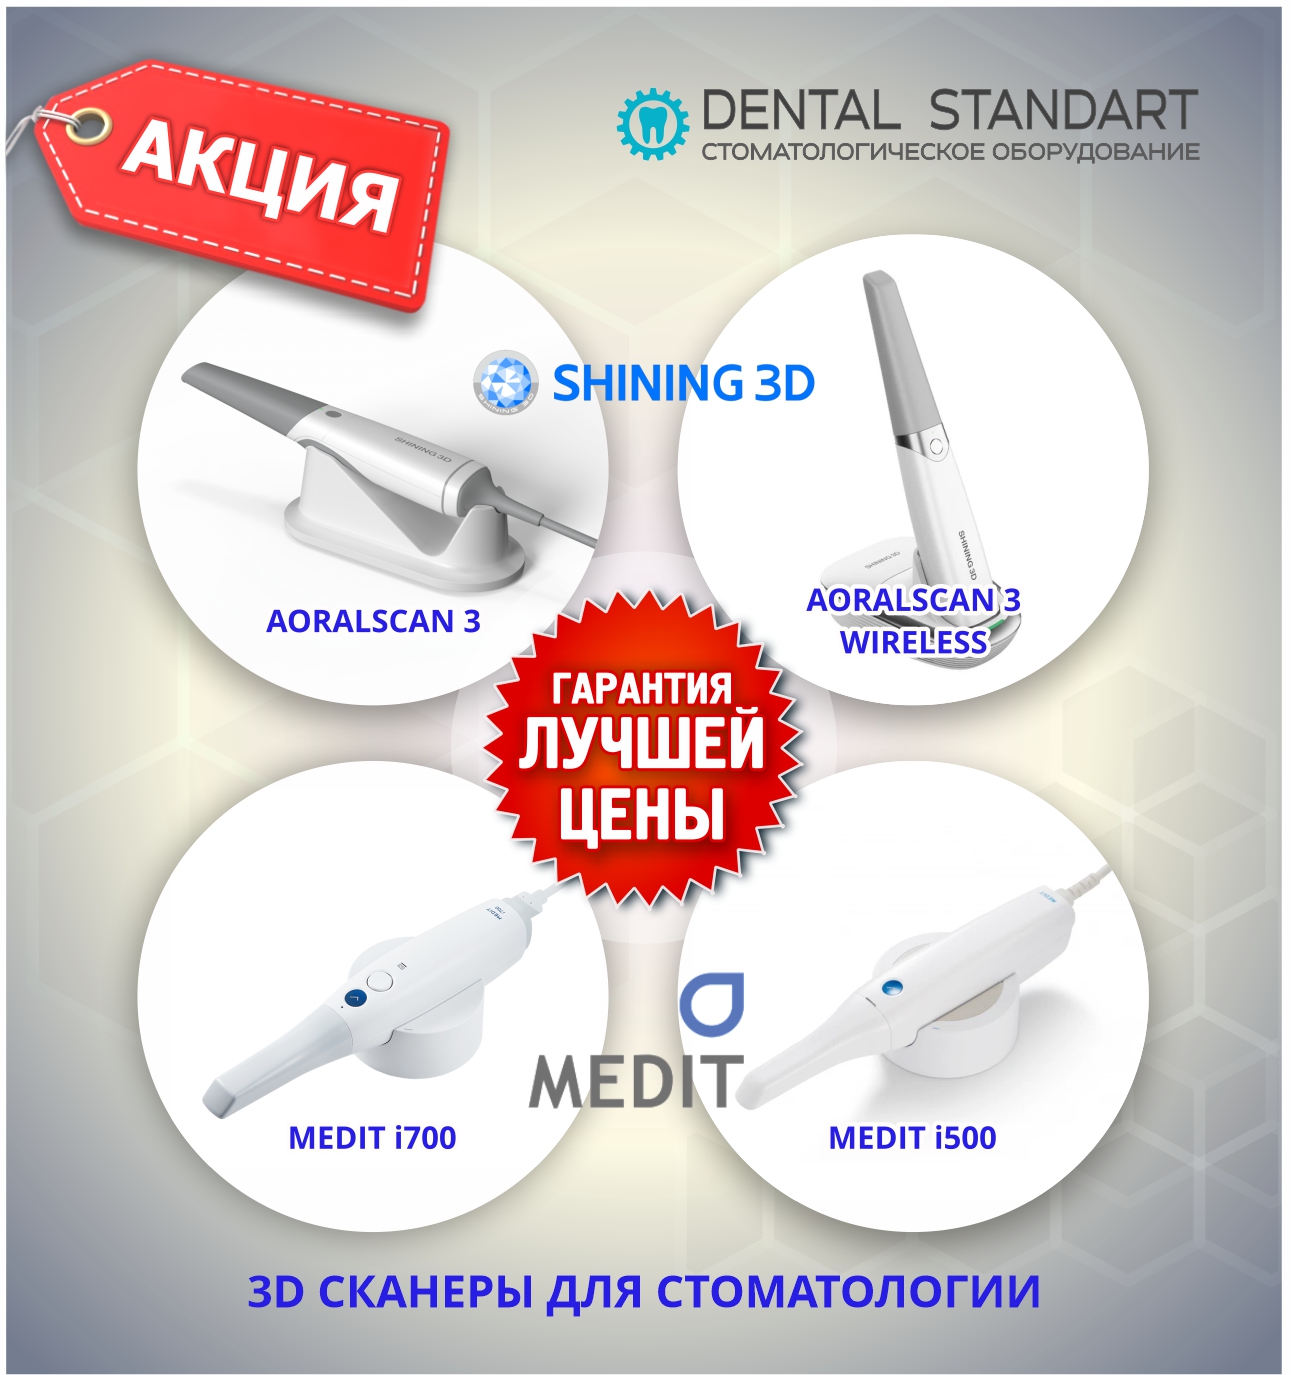 ❗️Акция на 3D cканеры для стоматологии в магазине стоматологического оборудования в Краснодаре❗️